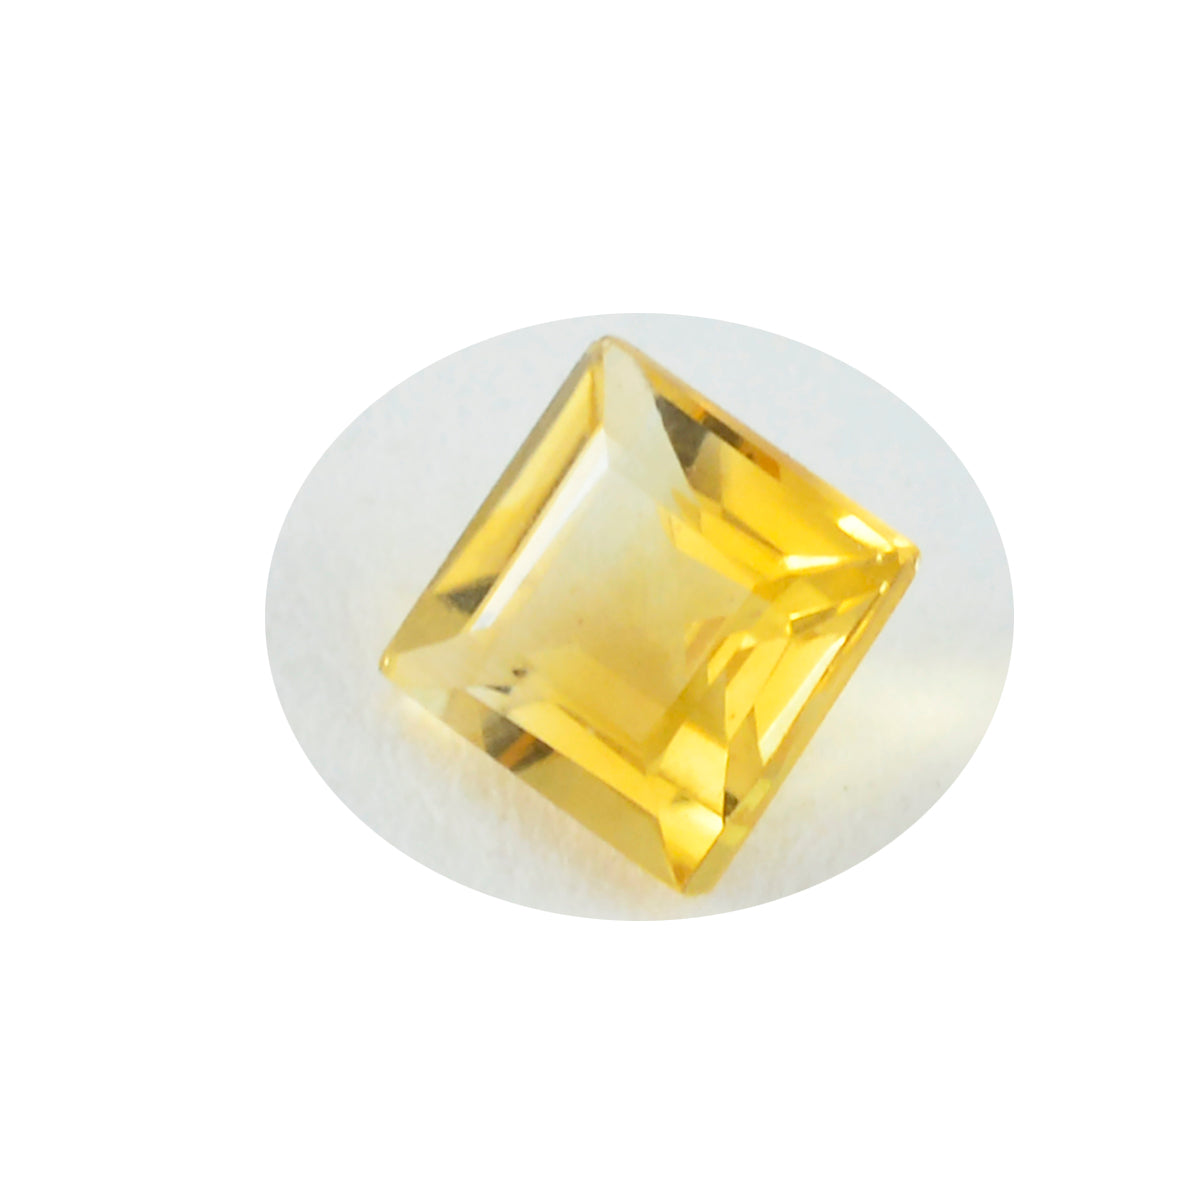 Riyogems 1 Stück echter gelber Citrin, facettiert, 11 x 11 mm, quadratische Form, Edelstein von ausgezeichneter Qualität